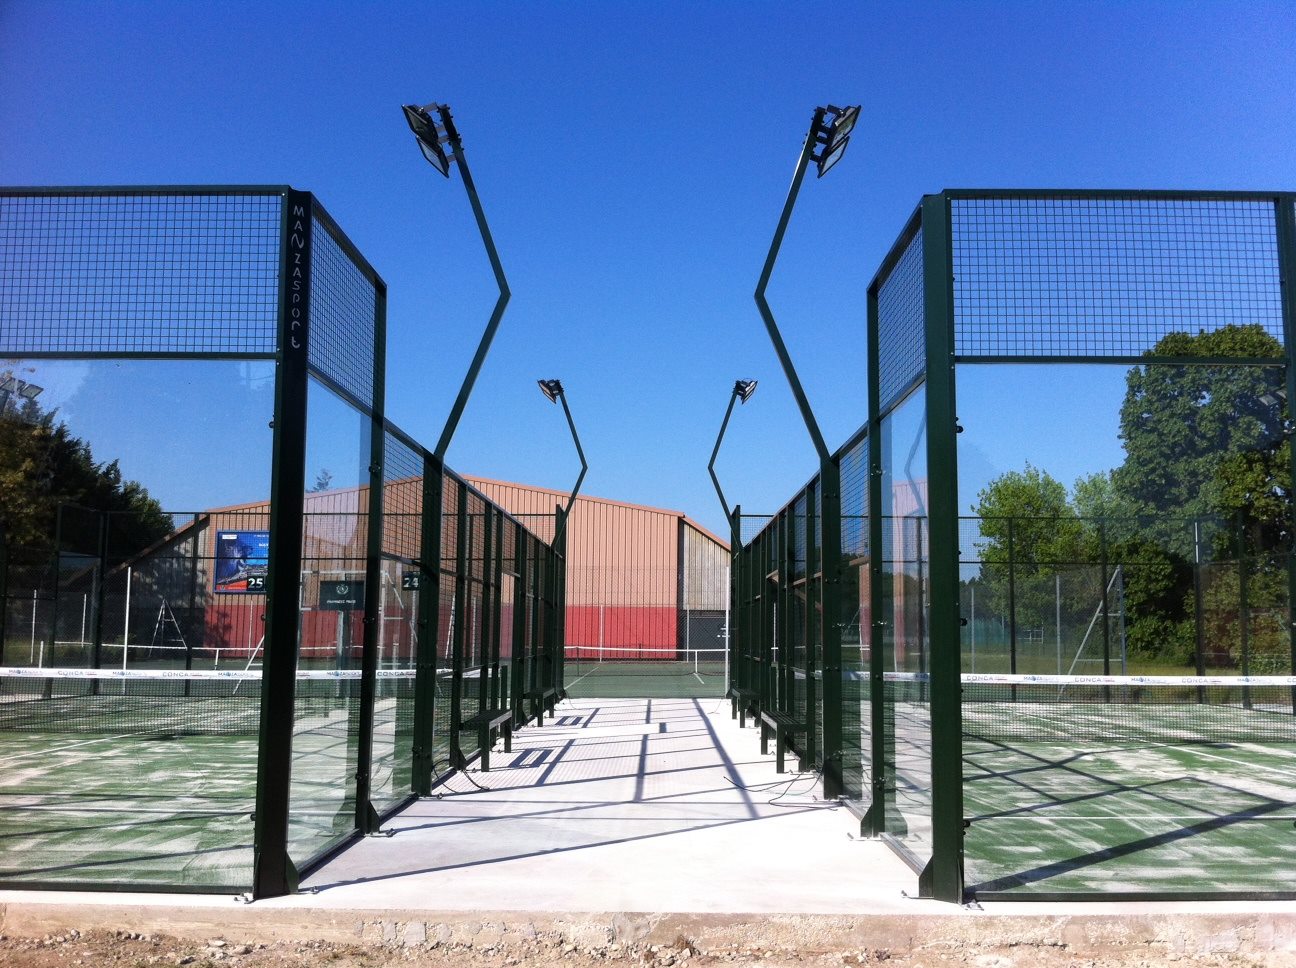 El Tennis Club de Lyon ofereix 2 pistes de pàdel